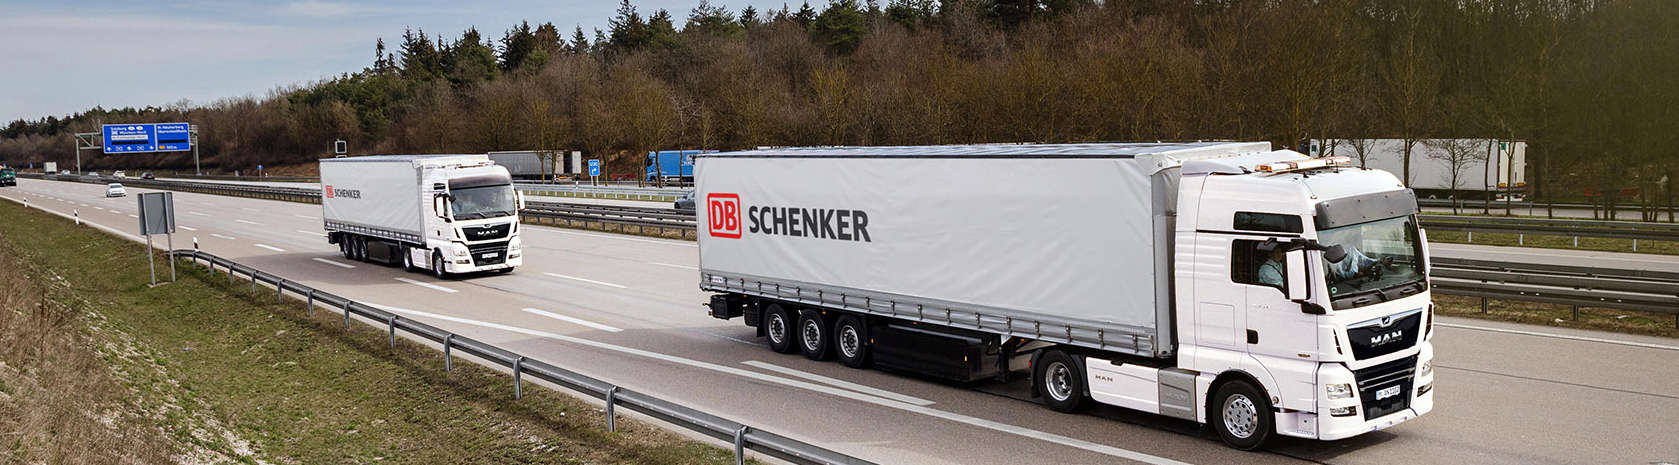 DB Schenker LKW